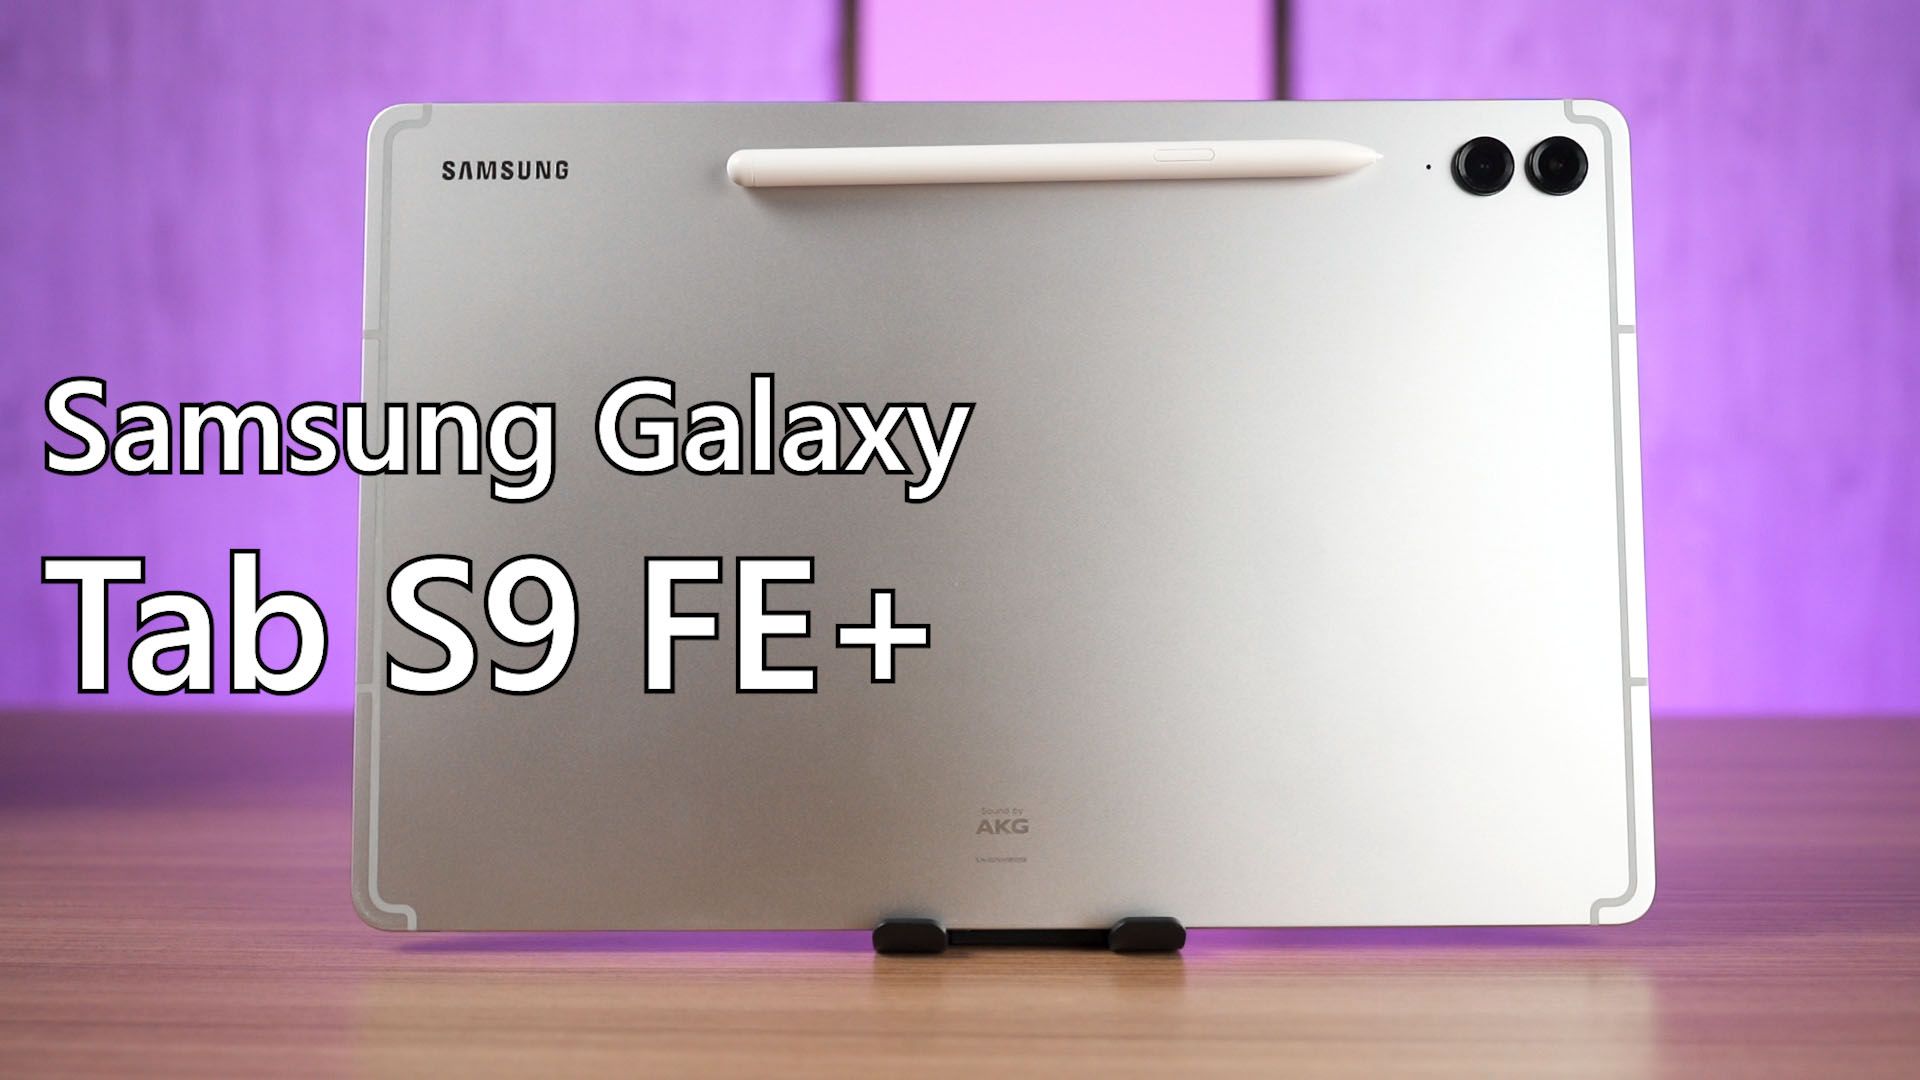 Galaxy Tab S9 FE Plus, Tablet dengan Stylus Pen yang Menempel Secara Magnetis di Casing Belakang 